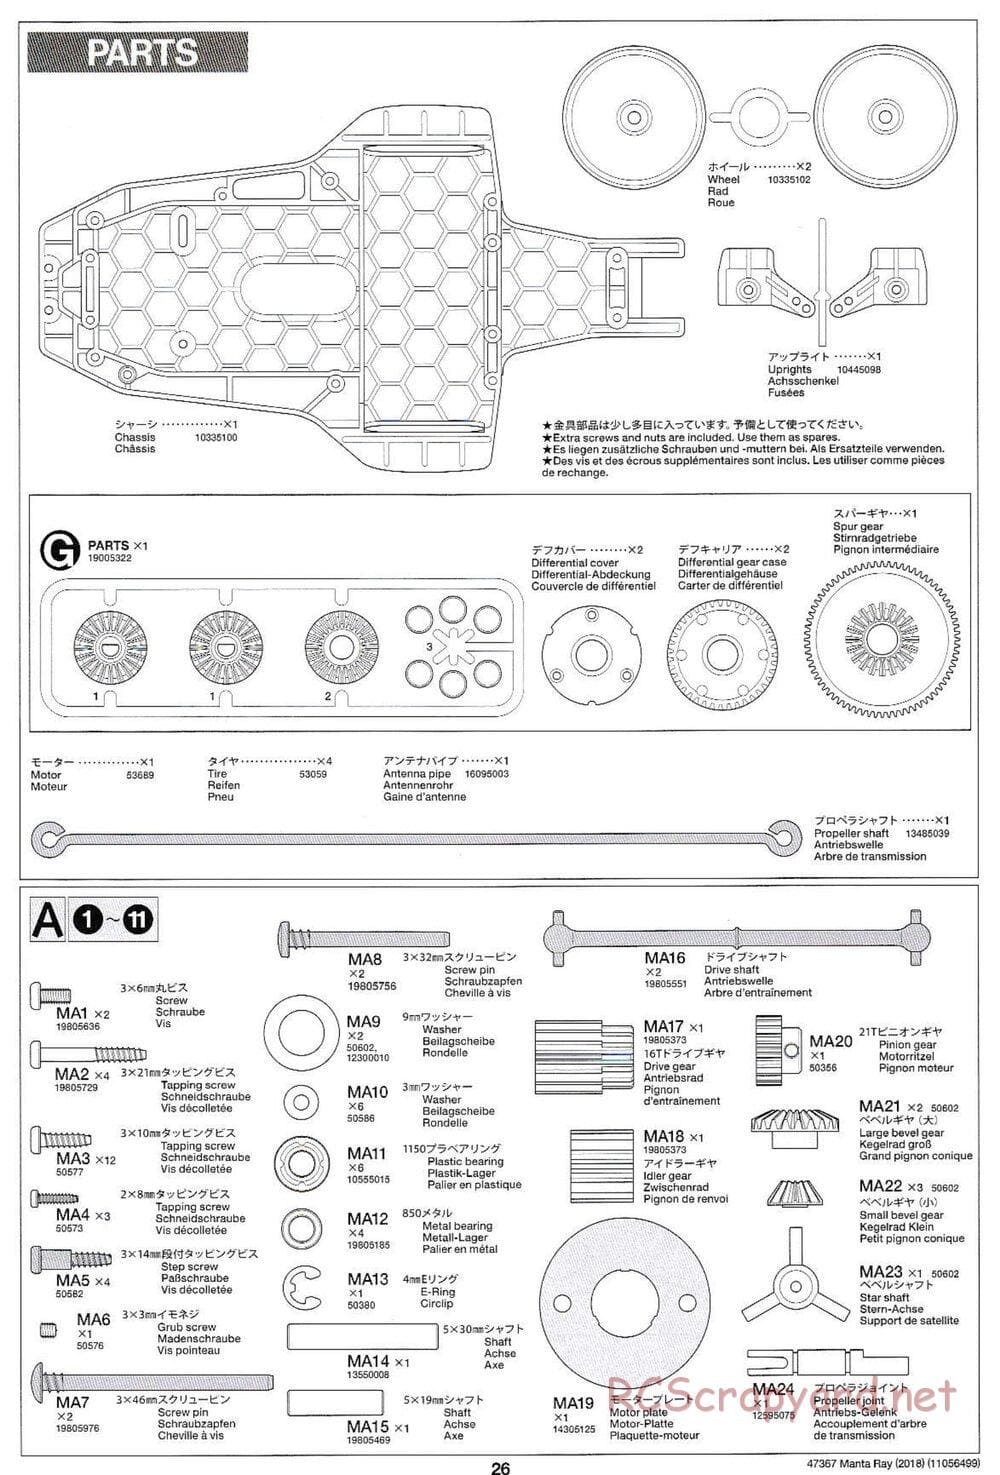 Tamiya - Manta Ray 2018 - DF-01 Chassis - Manual - Page 26